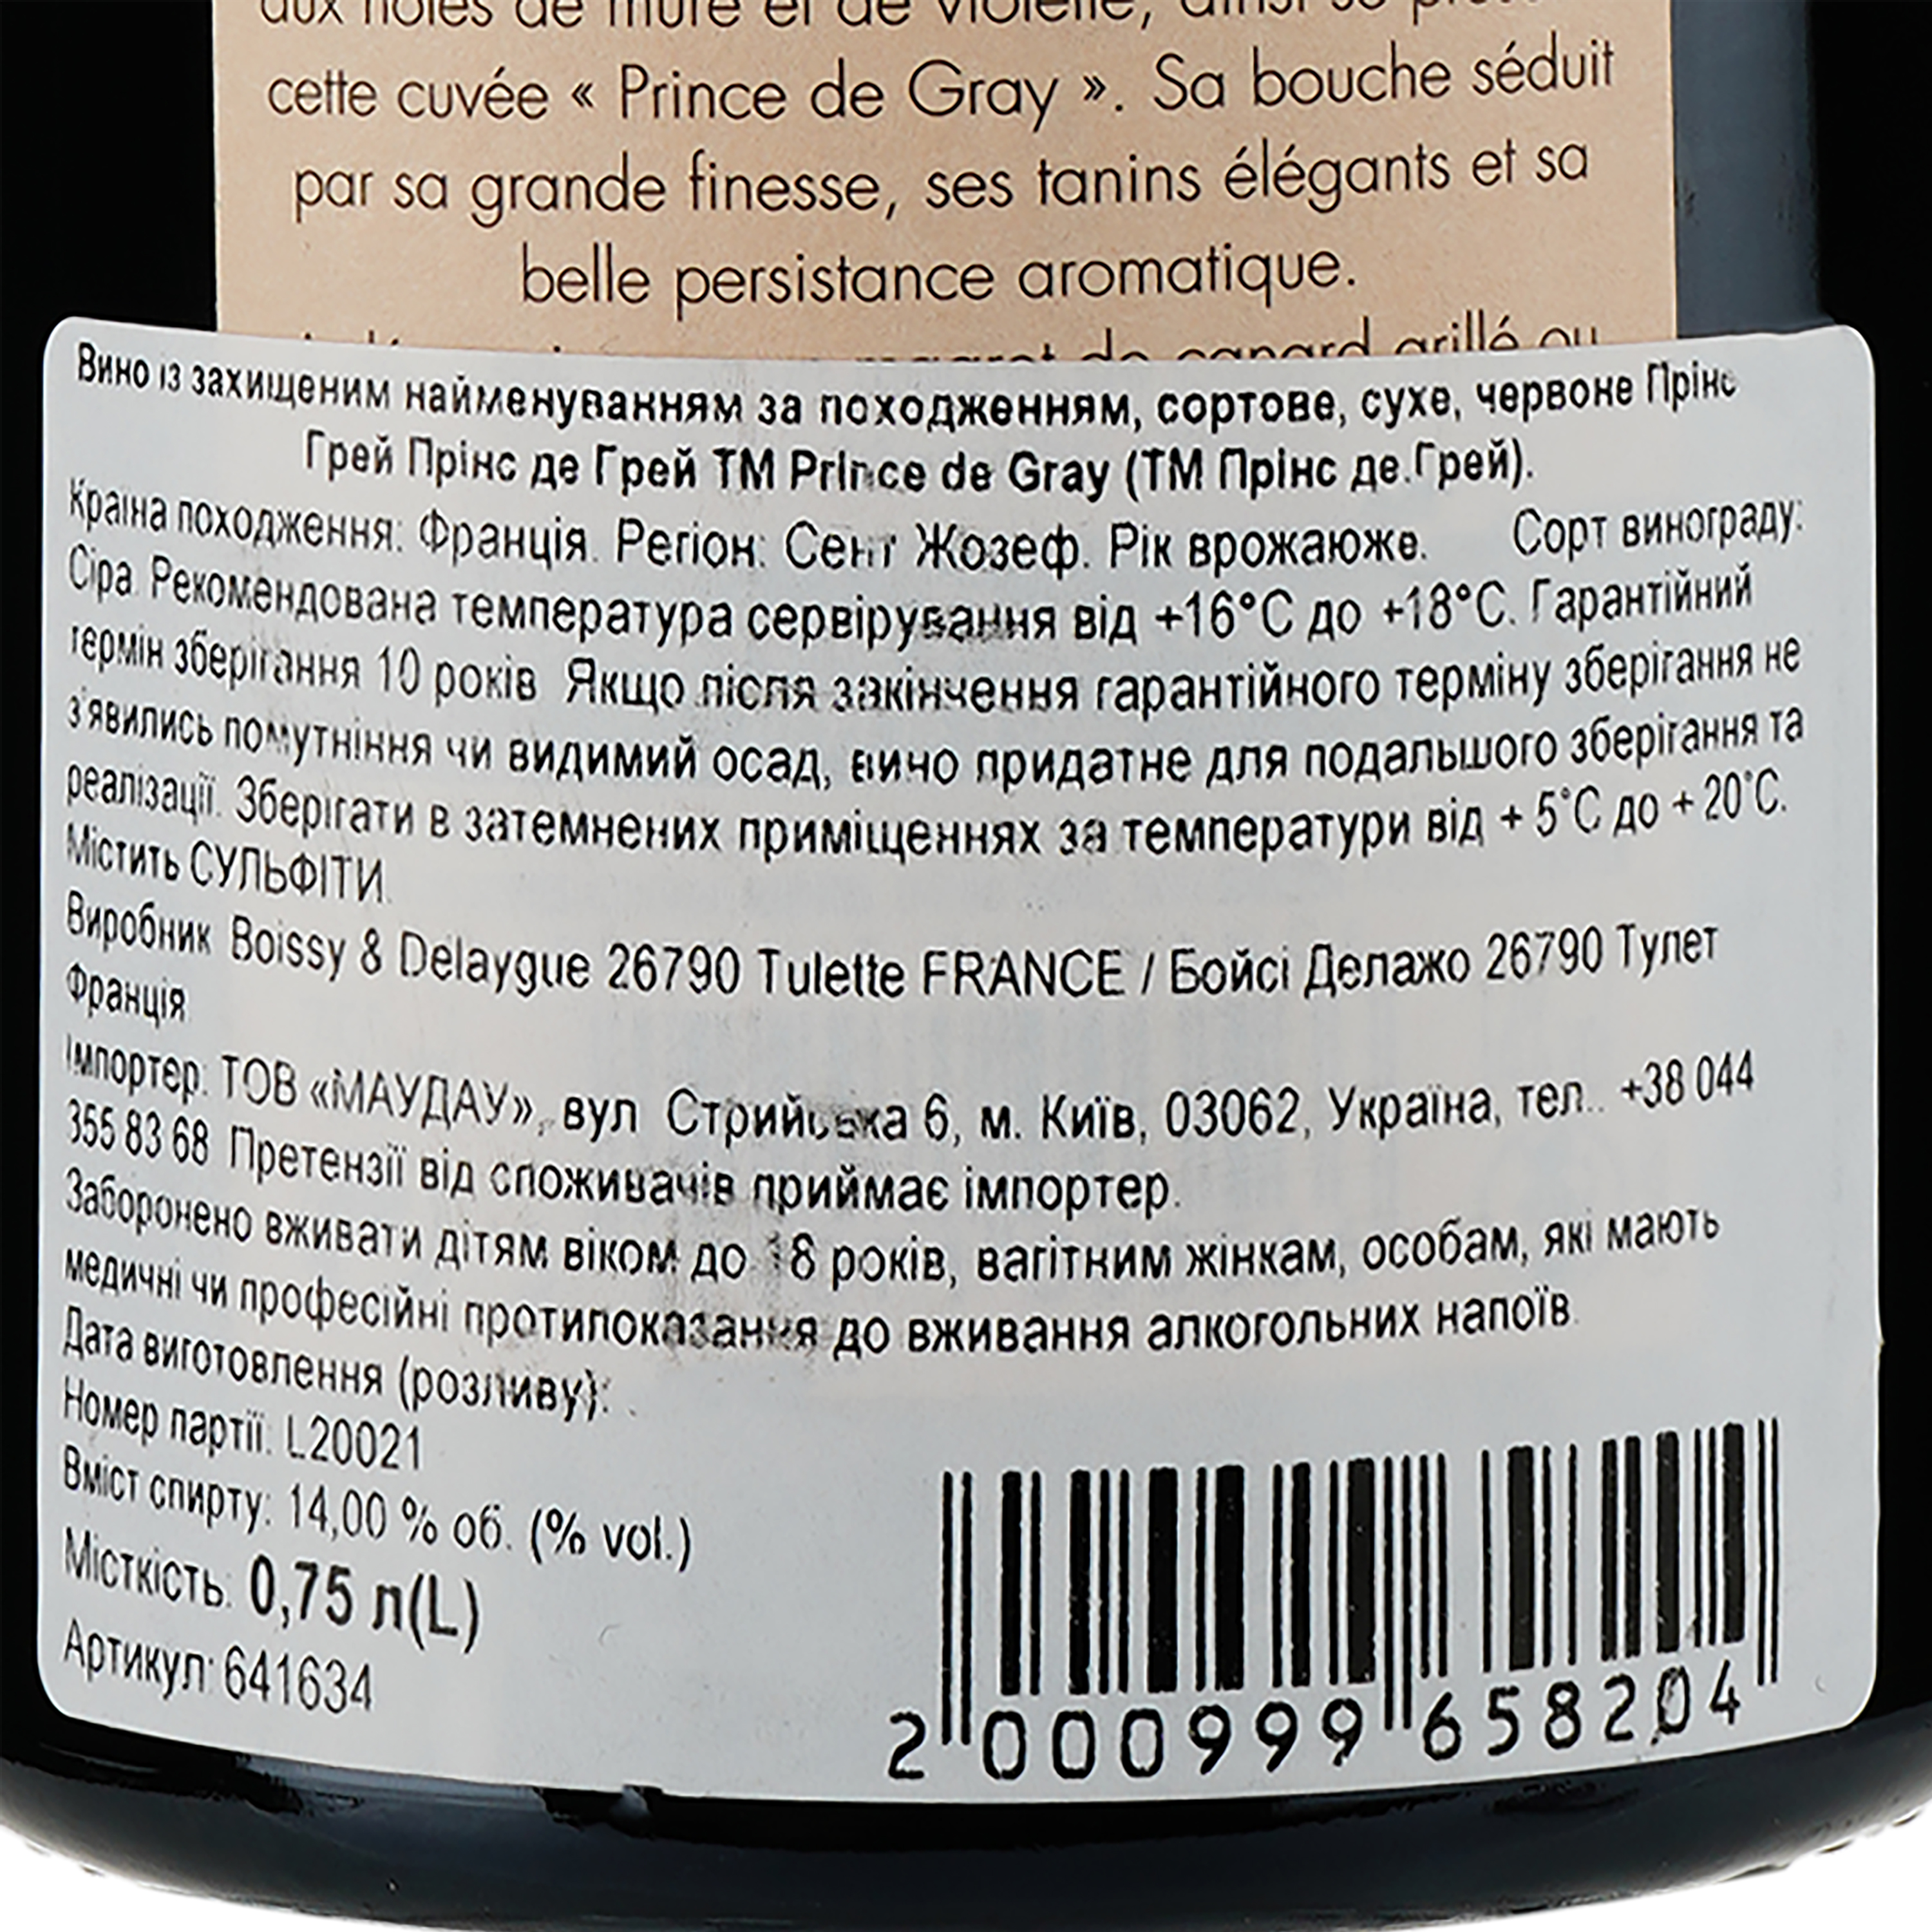 Вино Boissy & Delaygue Prince de Gray AOP Saint-Joseph 2018 красное сухое 0.75 л - фото 3